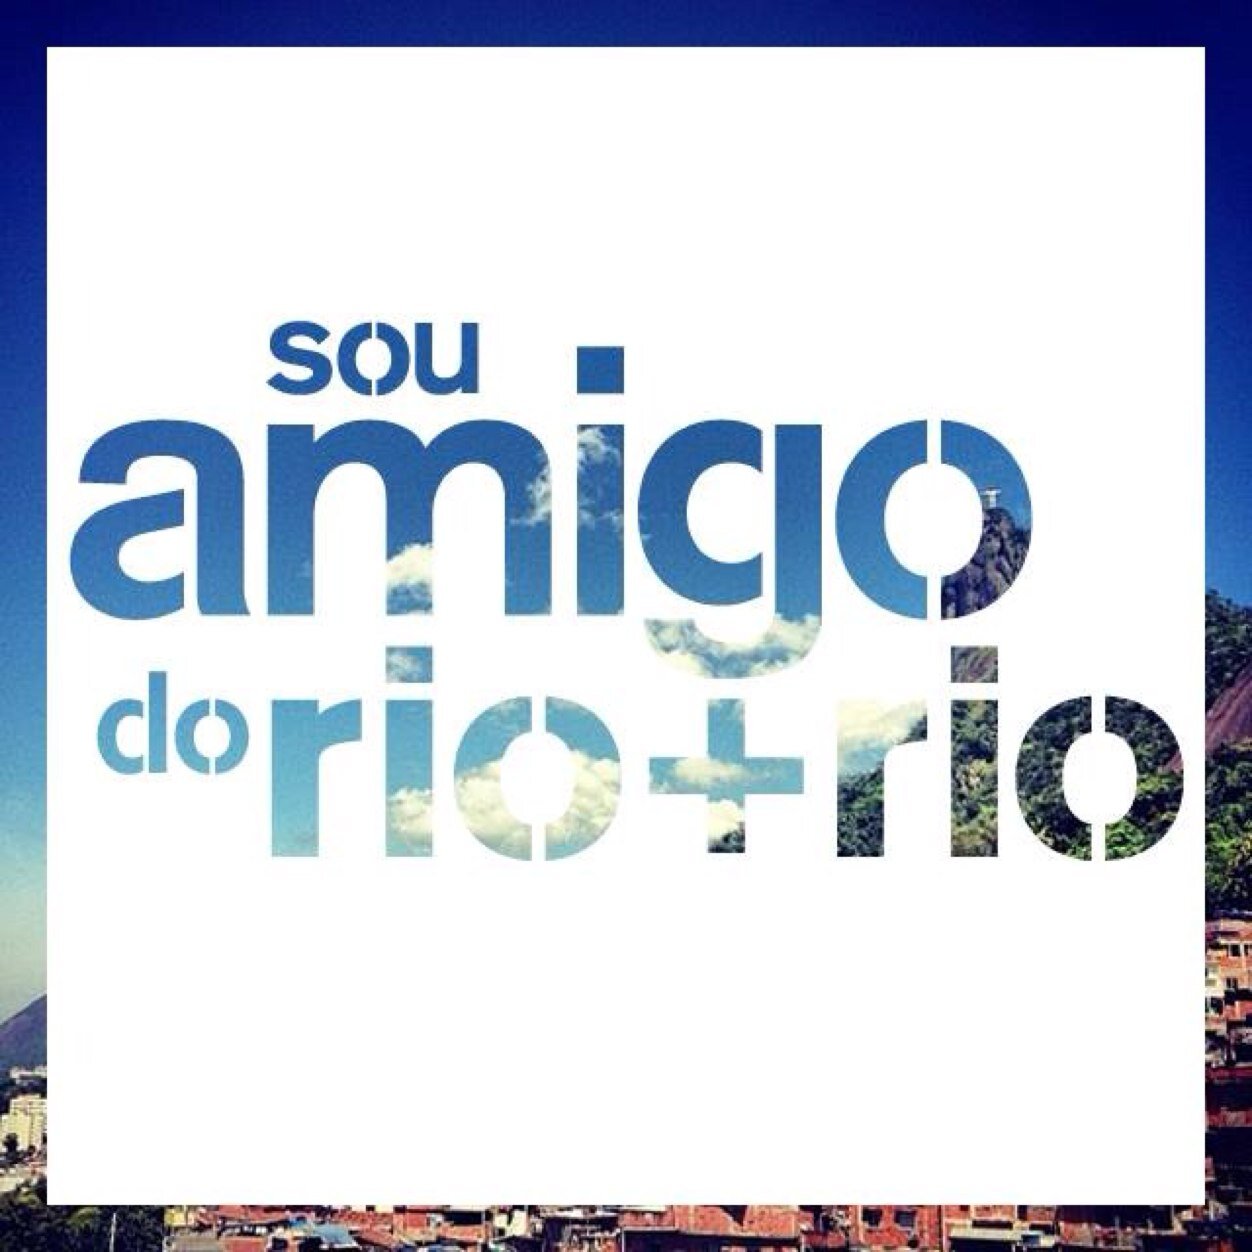 Uma iniciativa da agência NBS que está tentando aproximar as grandes marcas dos projetos existentes em comunidades do Rio para gerar transformações positivas!